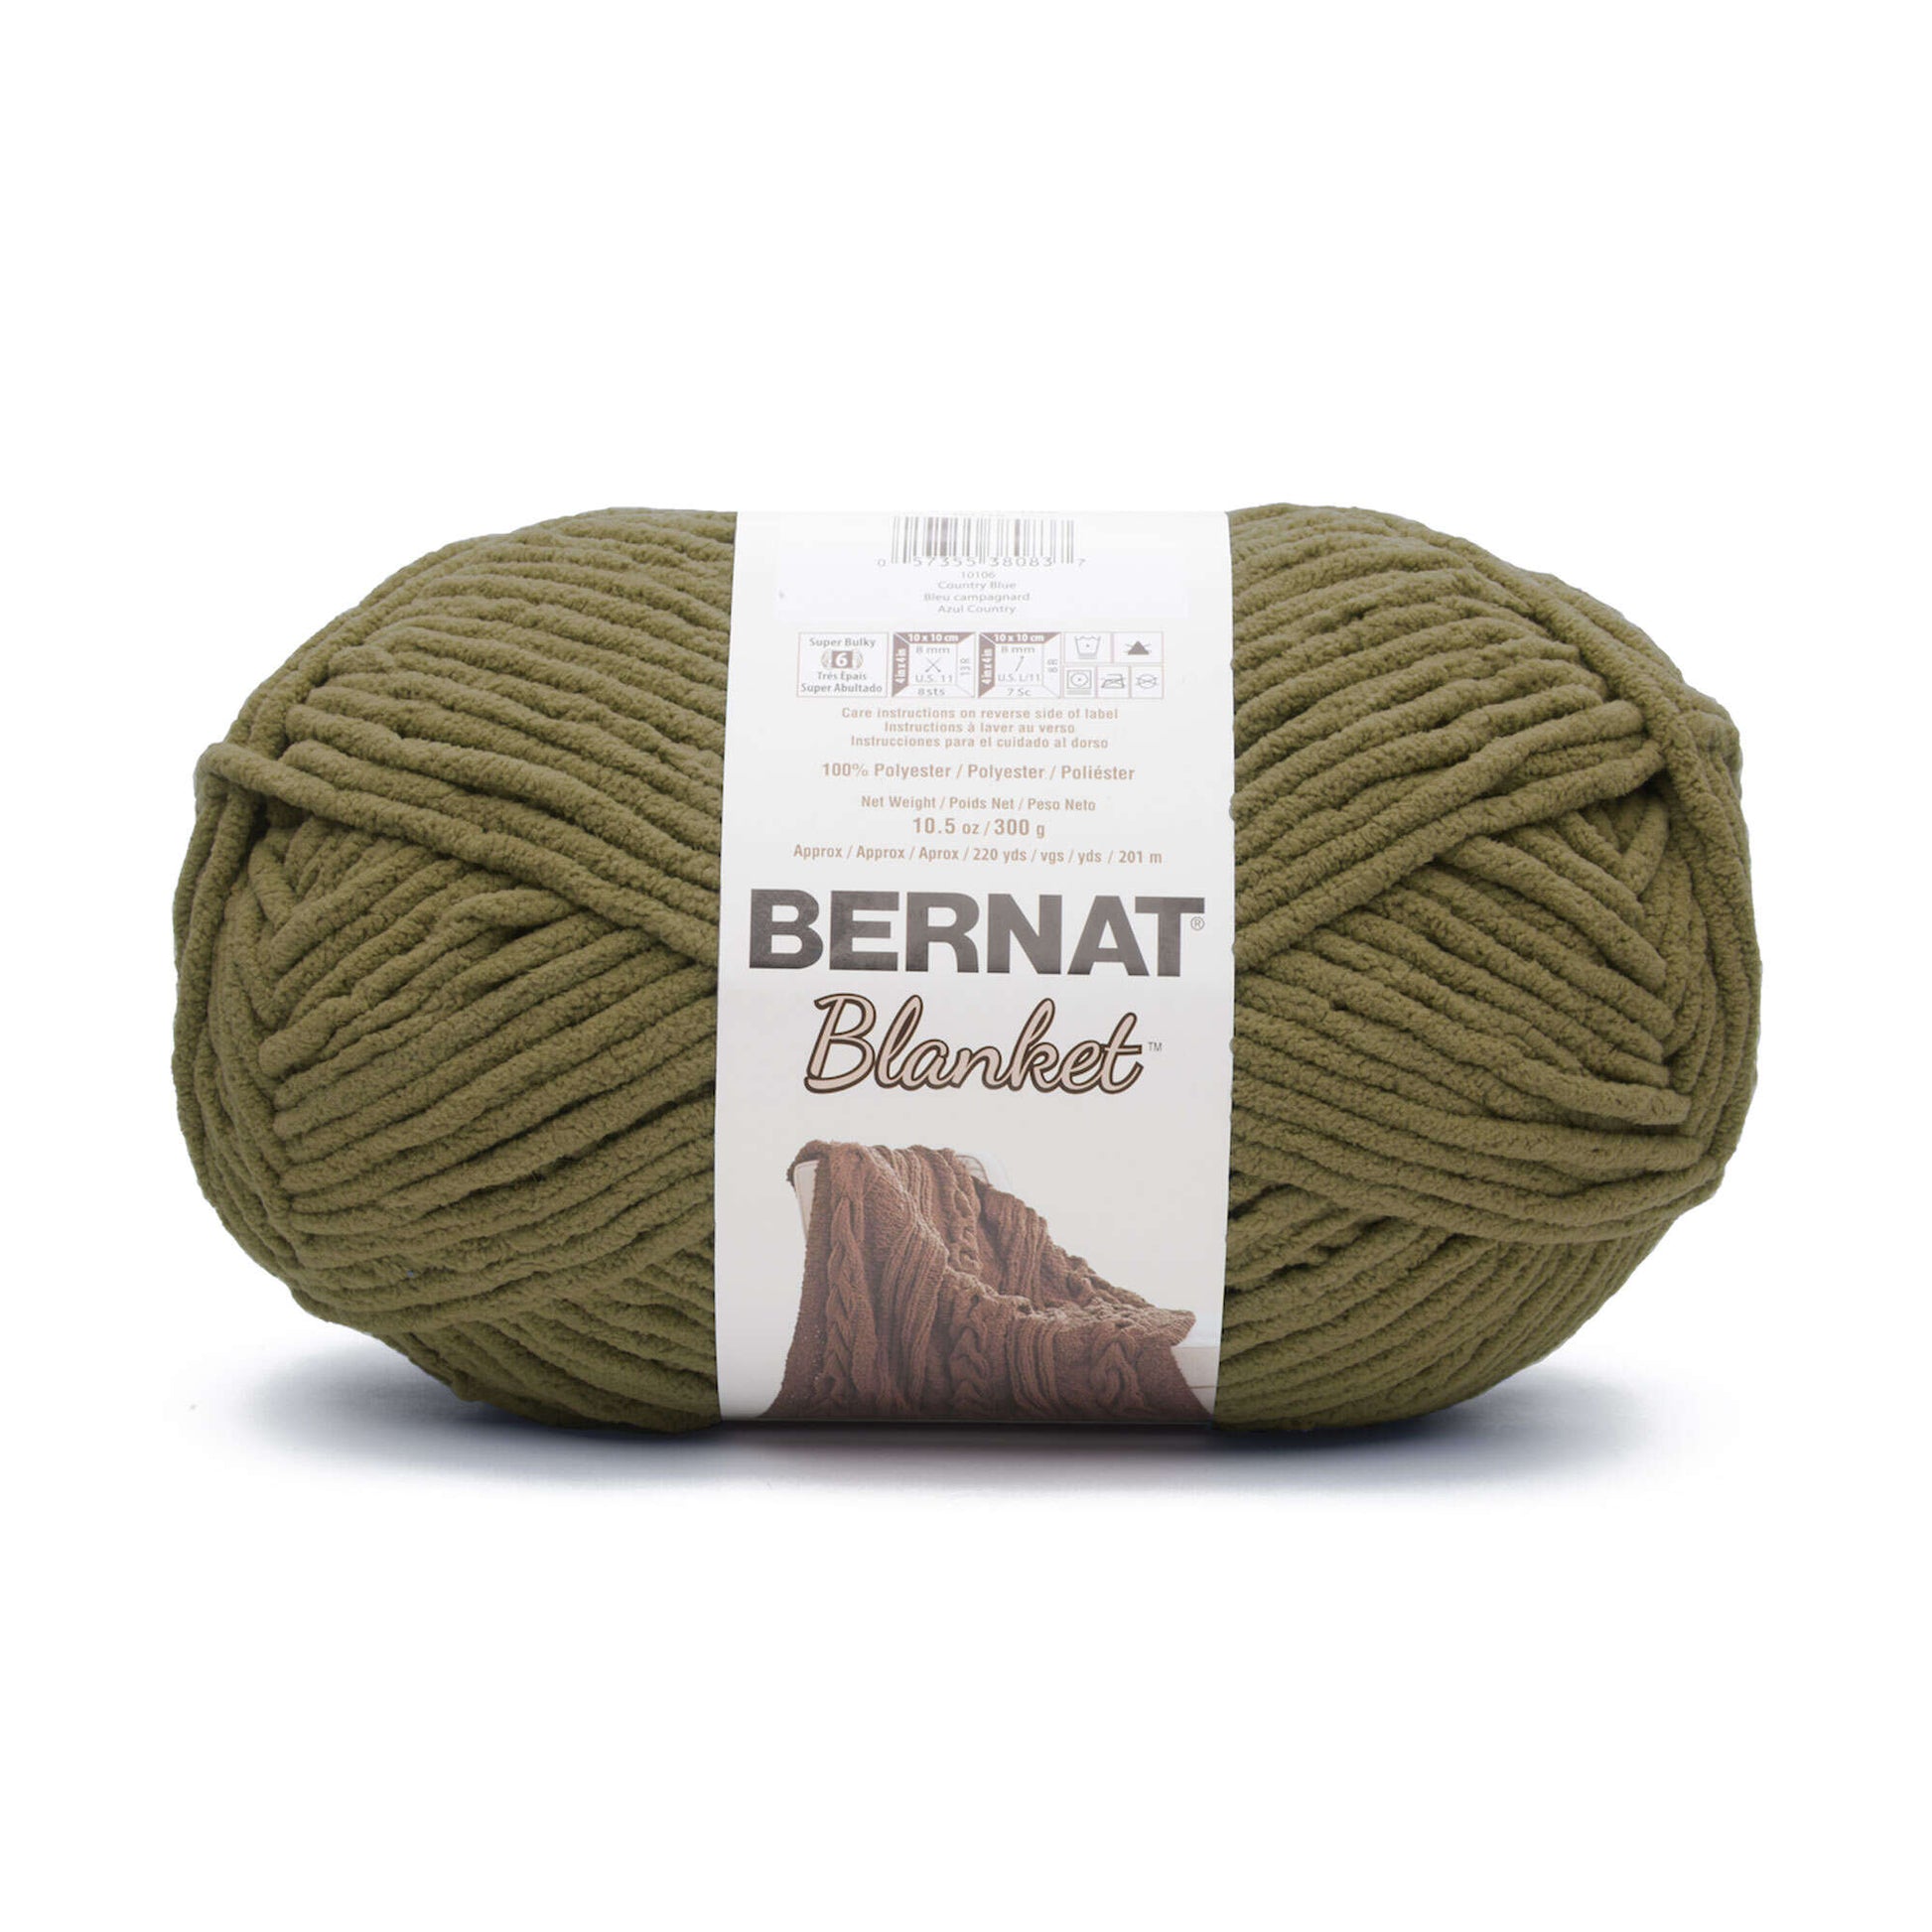 Bernat Blanket Yarn (300g/10.5oz) Olive